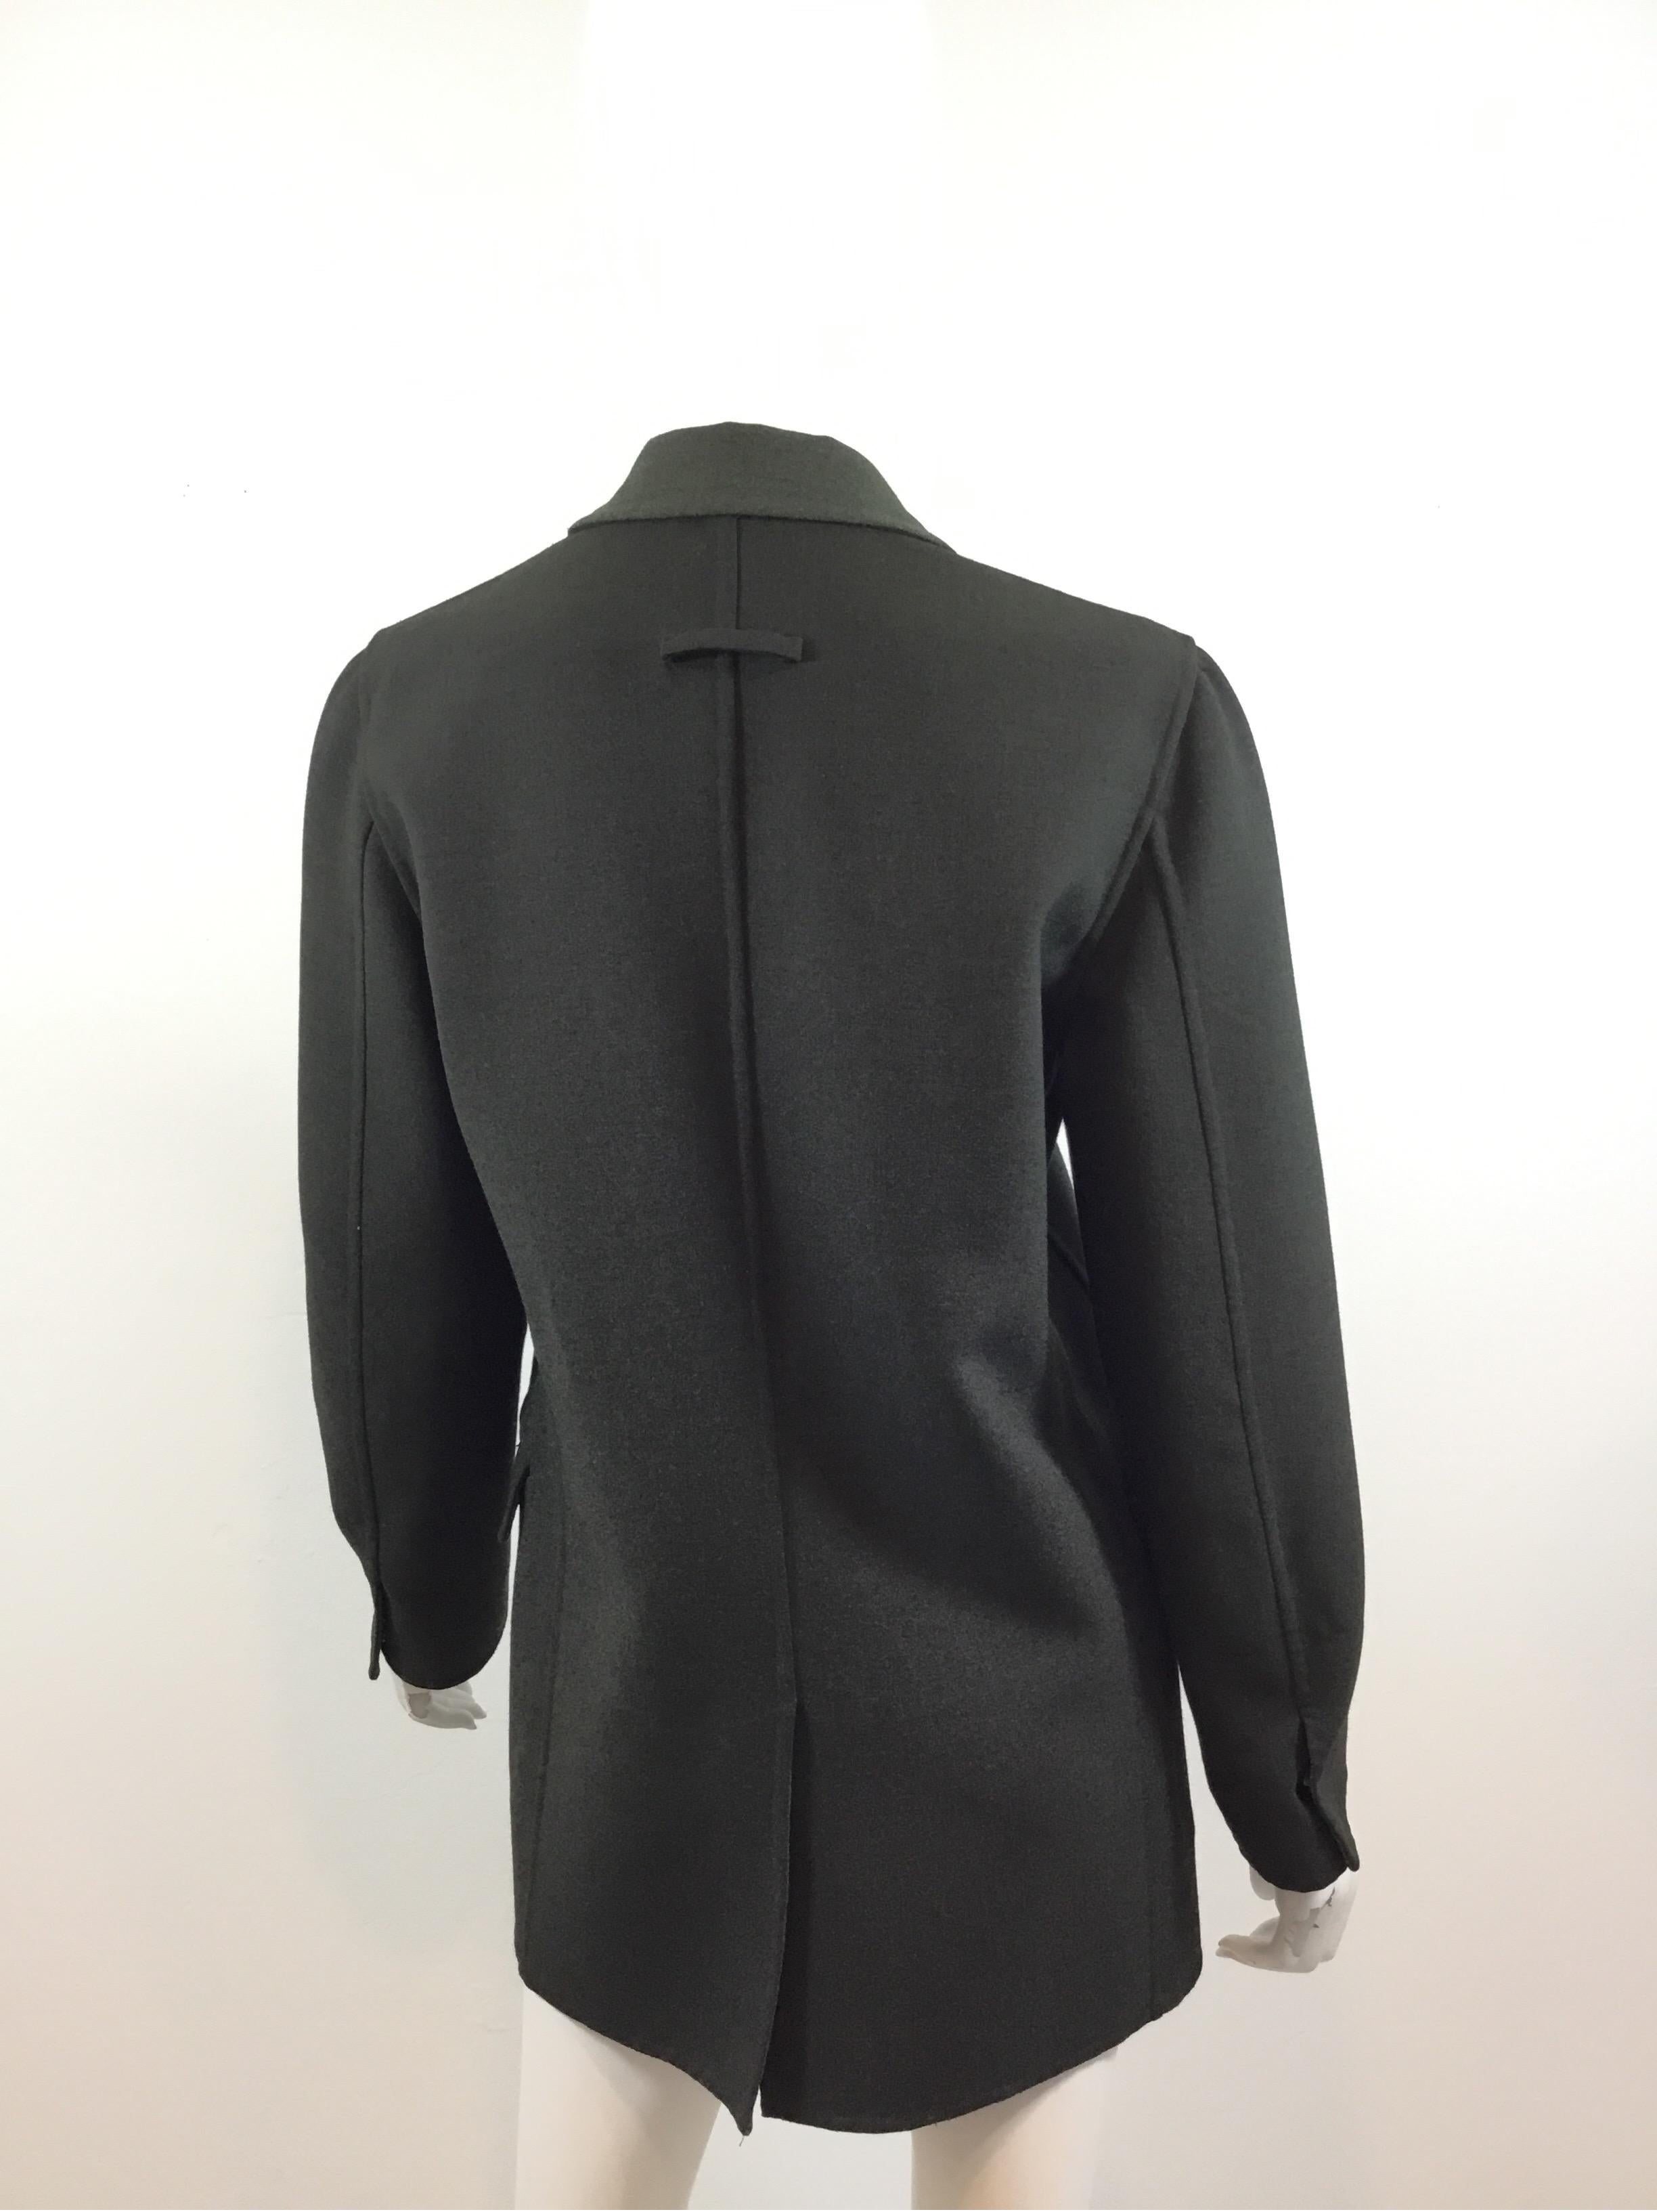 Black Jean Paul Gaultier Reversible Blazer Jacket